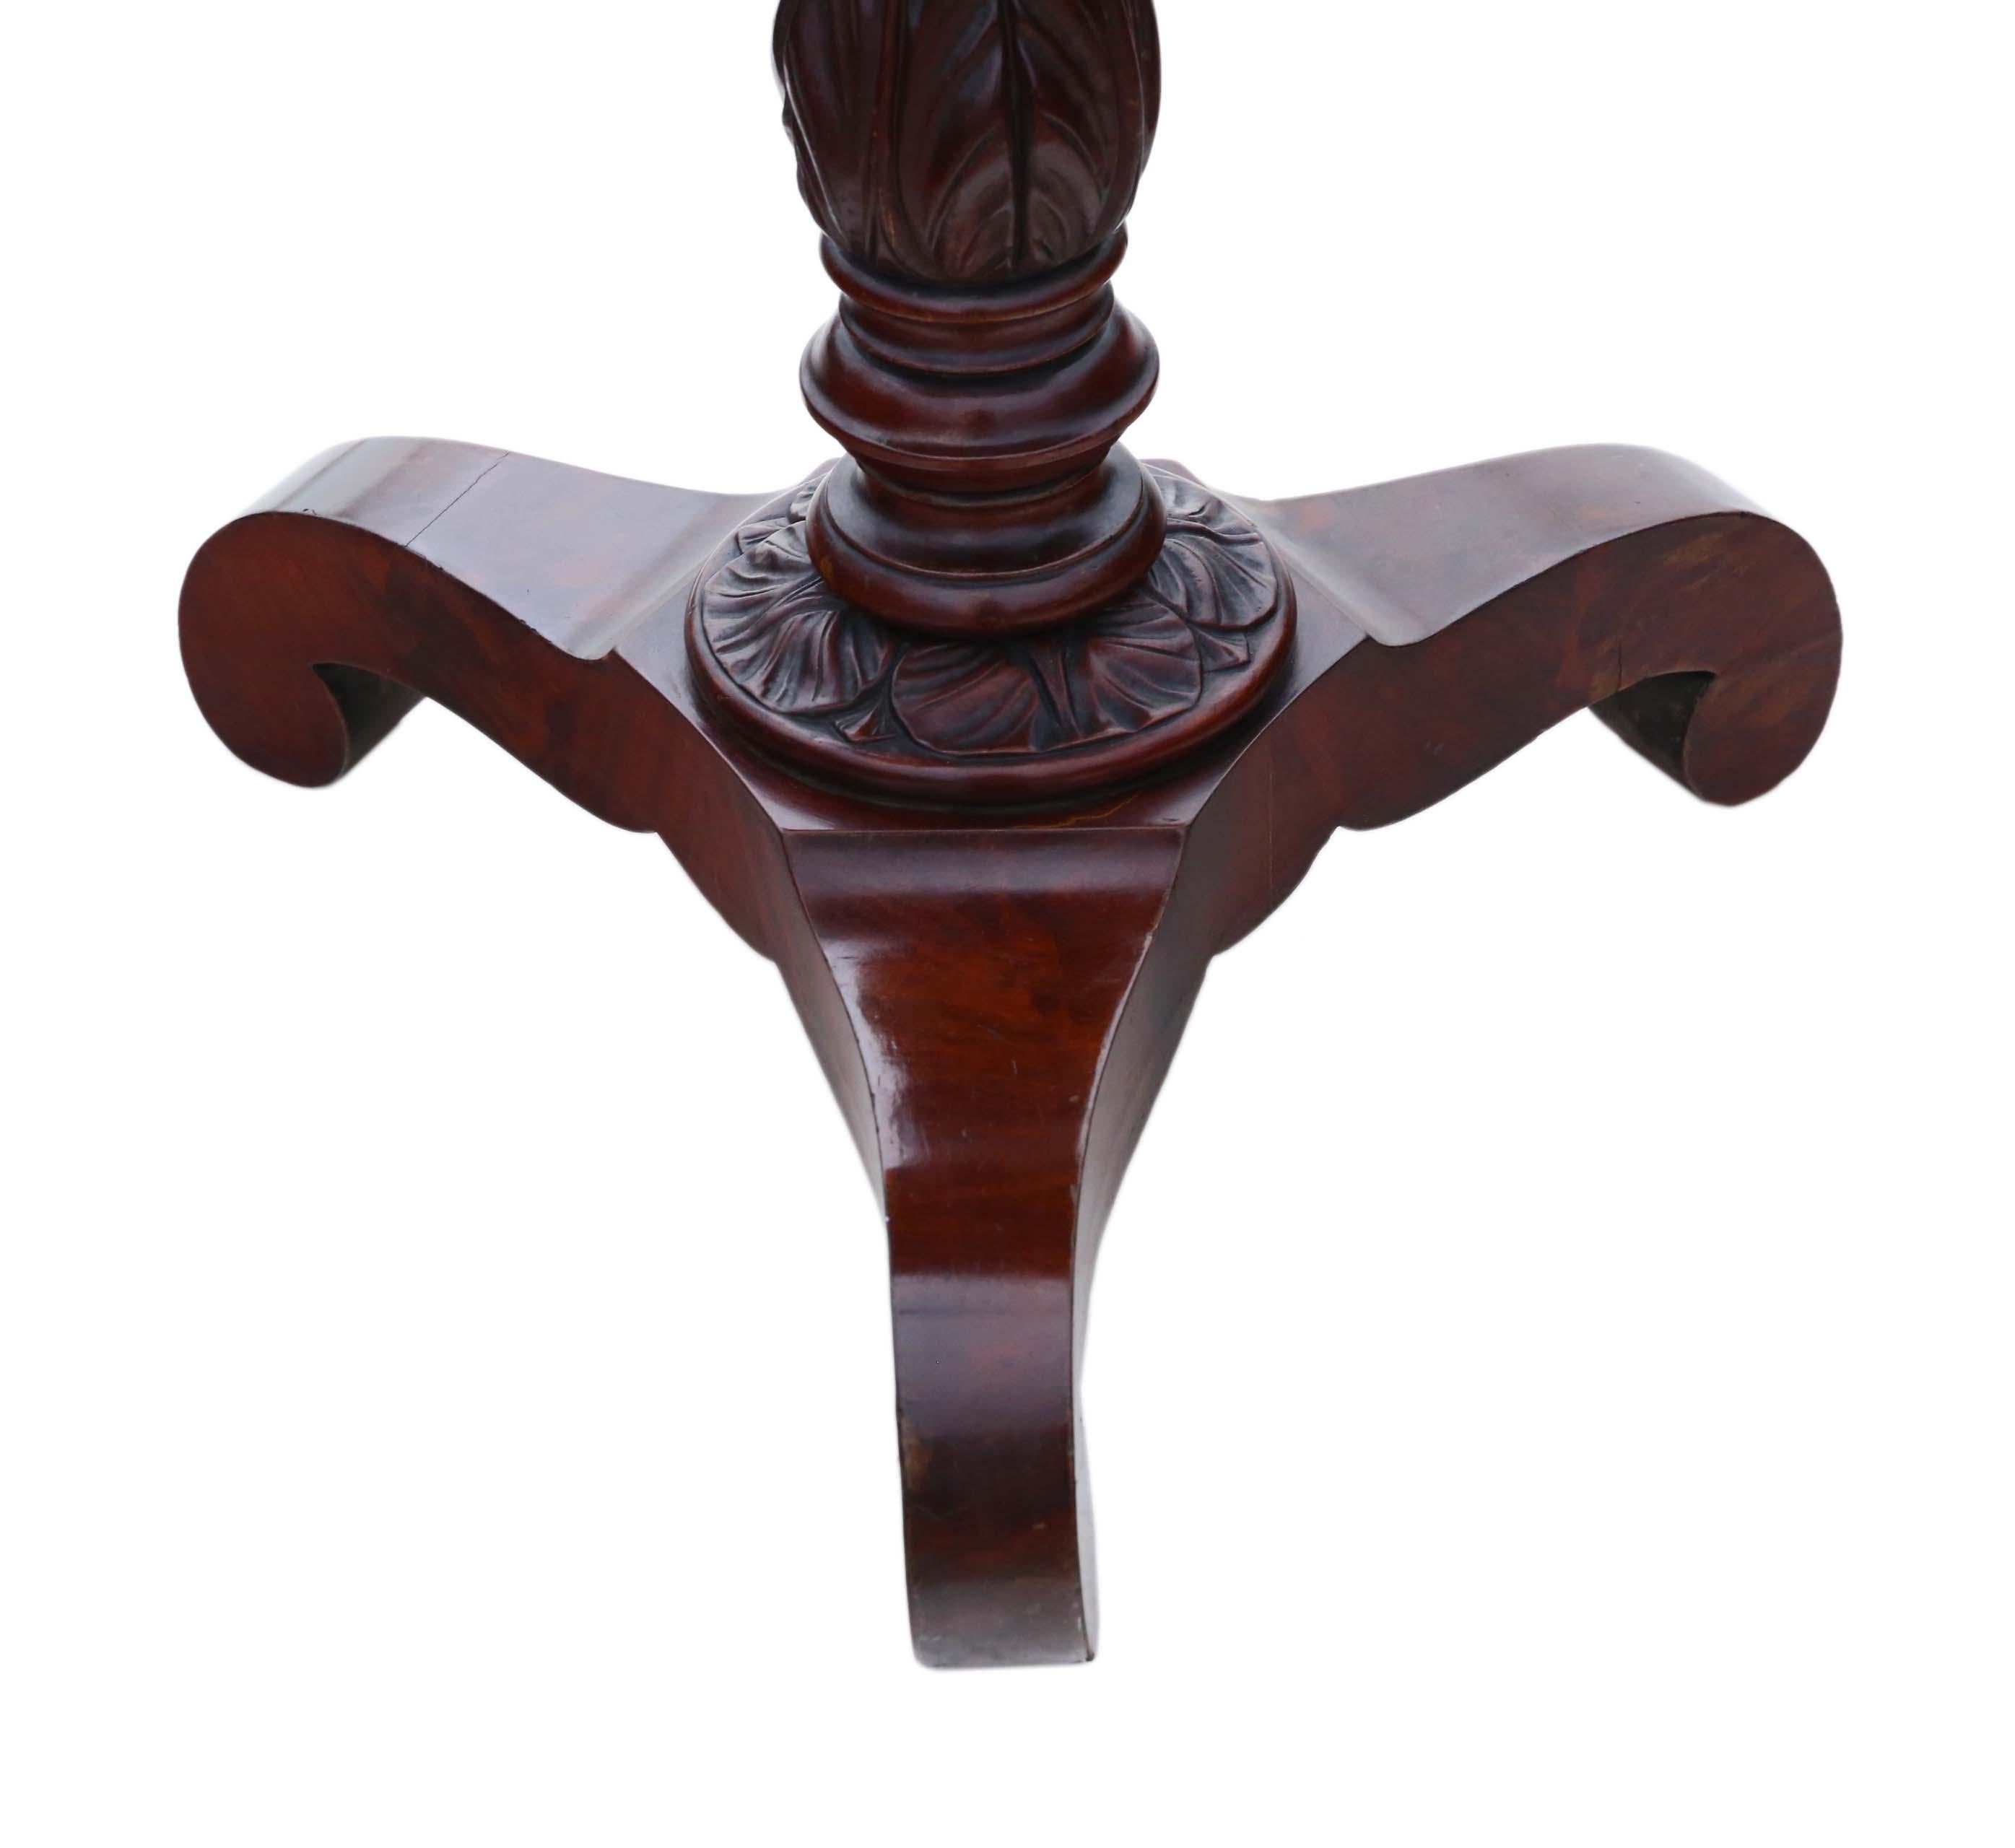 Antike feine Qualität frühen viktorianischen C1840 Flamme Mahagoni Arbeit Seite Nähtisch Box.

Es handelt sich um einen schönen Gegenstand, der voller Alter, Charme und Charakter ist.

Ein attraktives, seltenes und vielseitiges Stück mit so